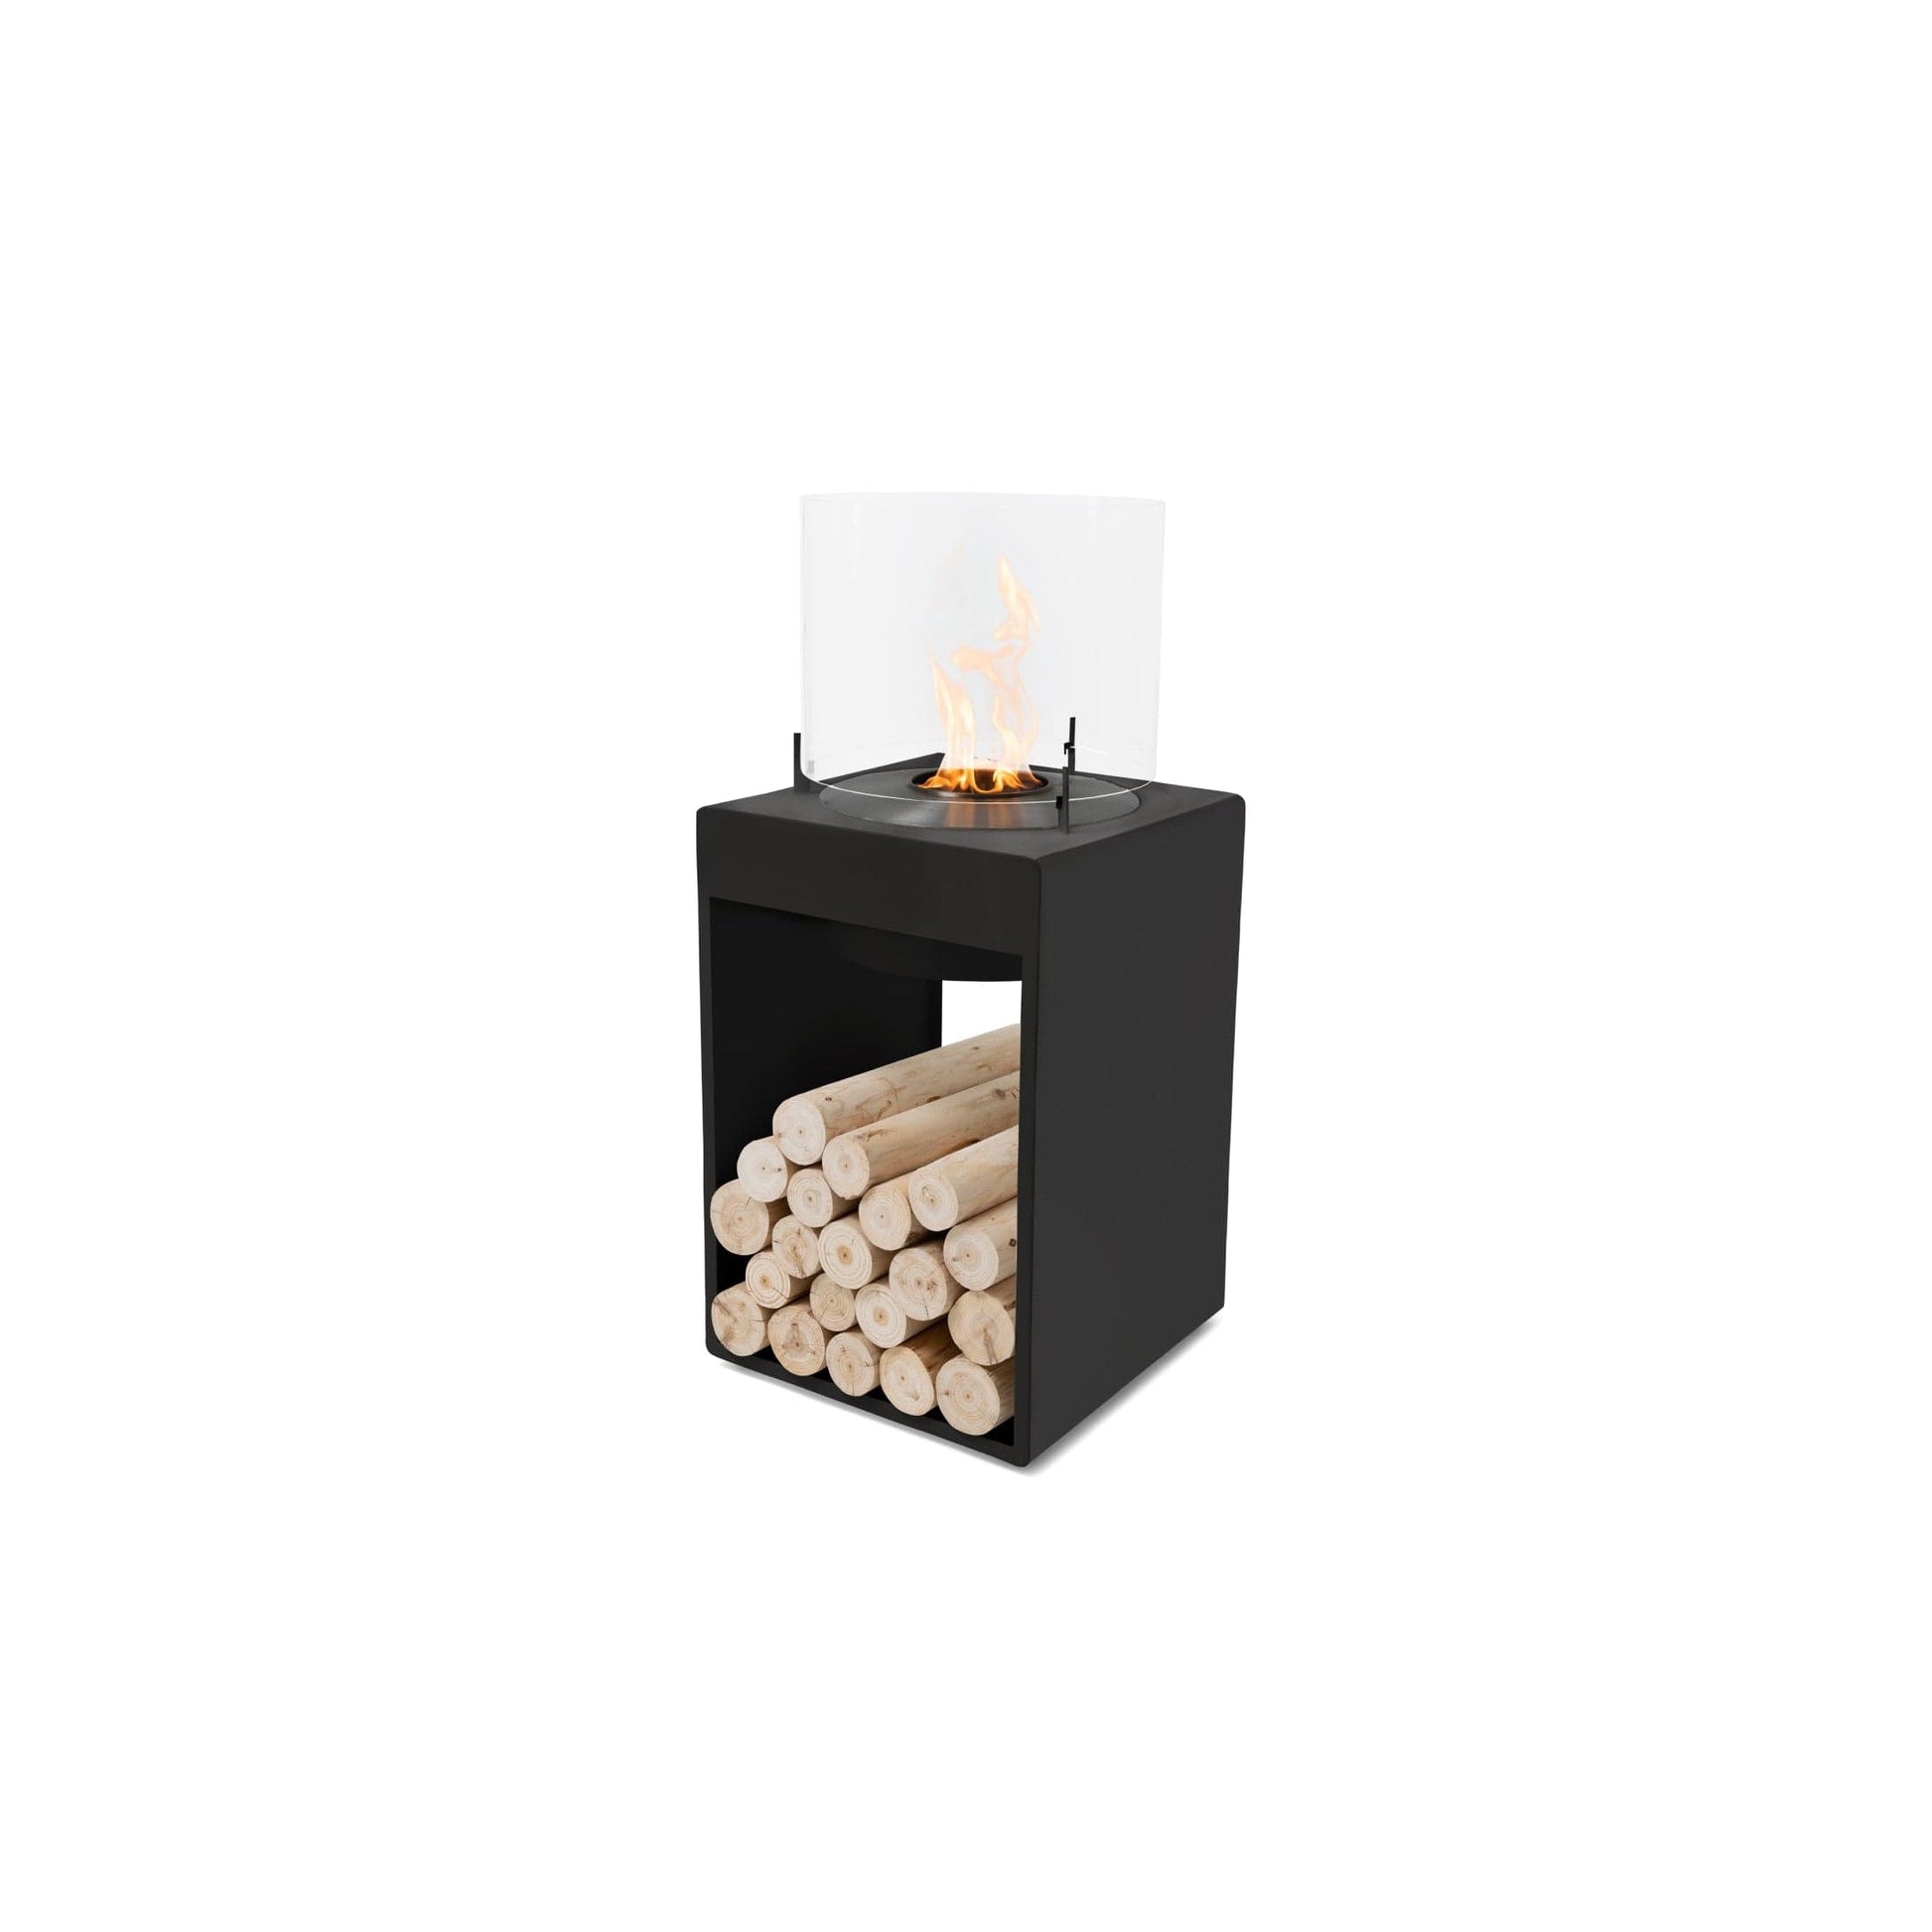 EcoSmart Fire POP 8T 39" Black Freestanding Designer Fireplace with Black Burner by MAD Design Group